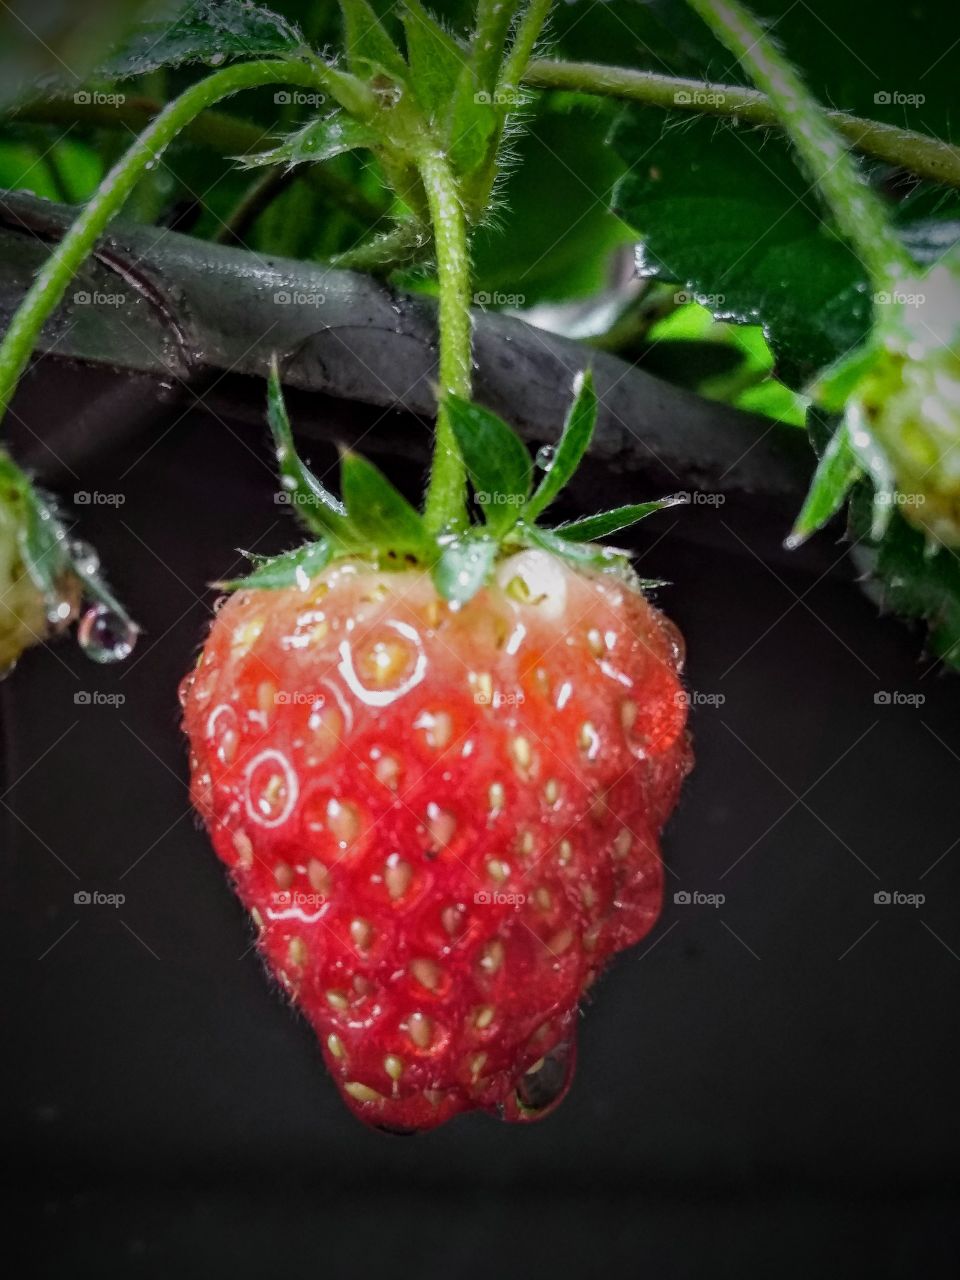 Small strawberry.../ Wet strawberry.../water drop.../ Moranguinho/ Morango molhado/ Gota d'água...